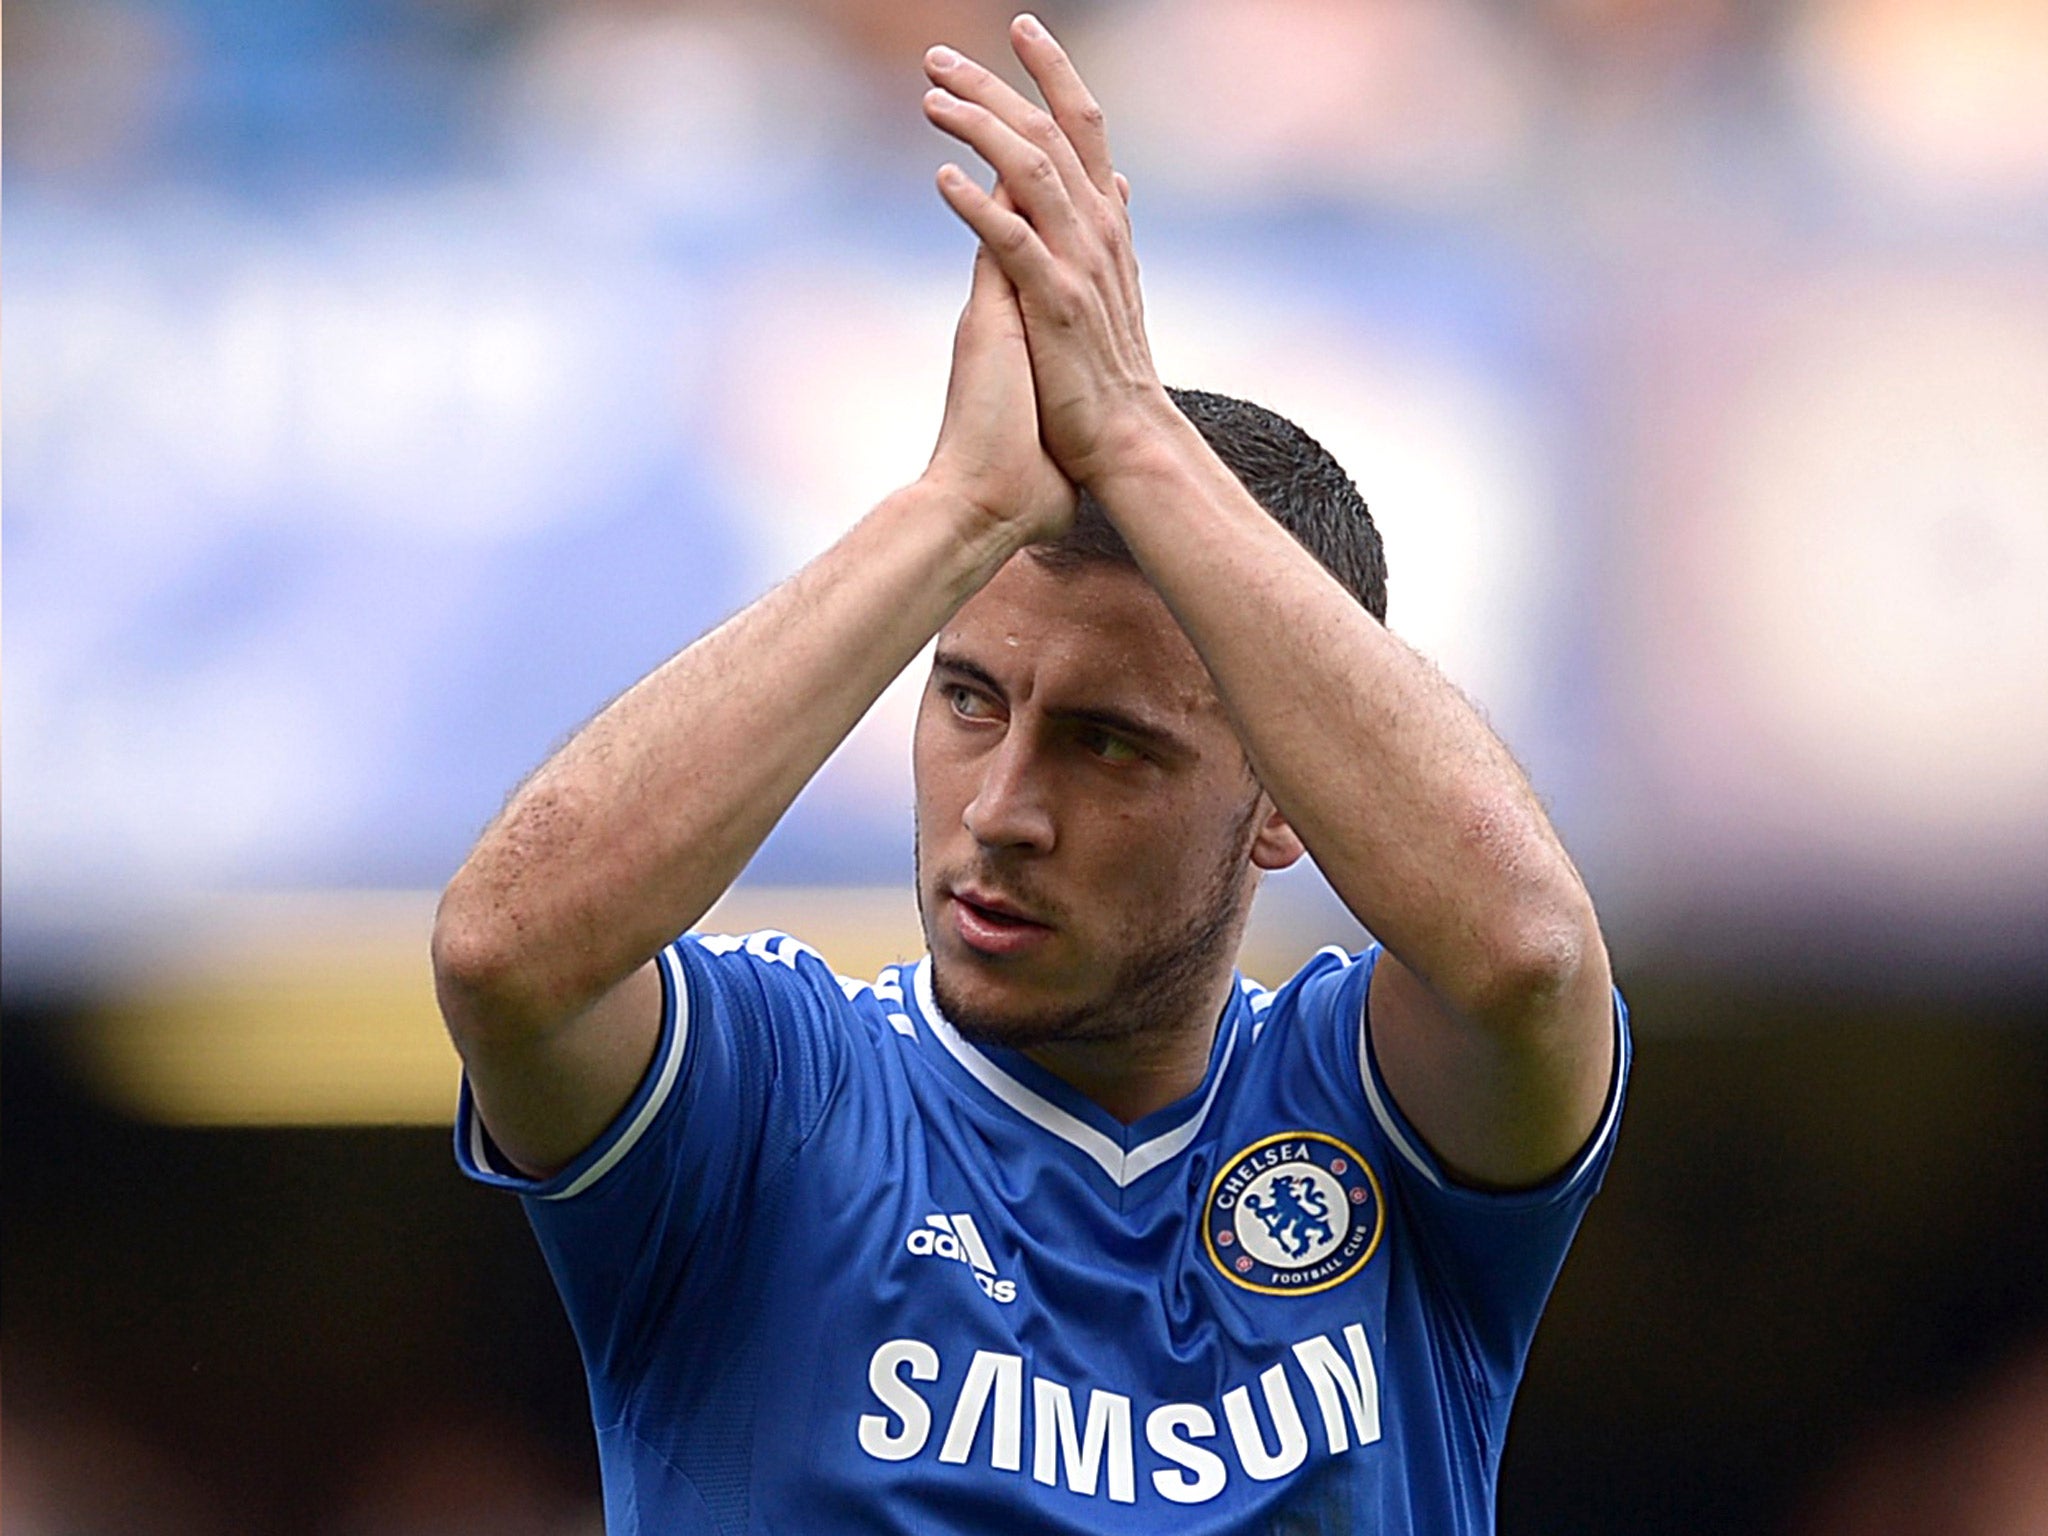 Eden Hazard has eased Chelsea fans' fears